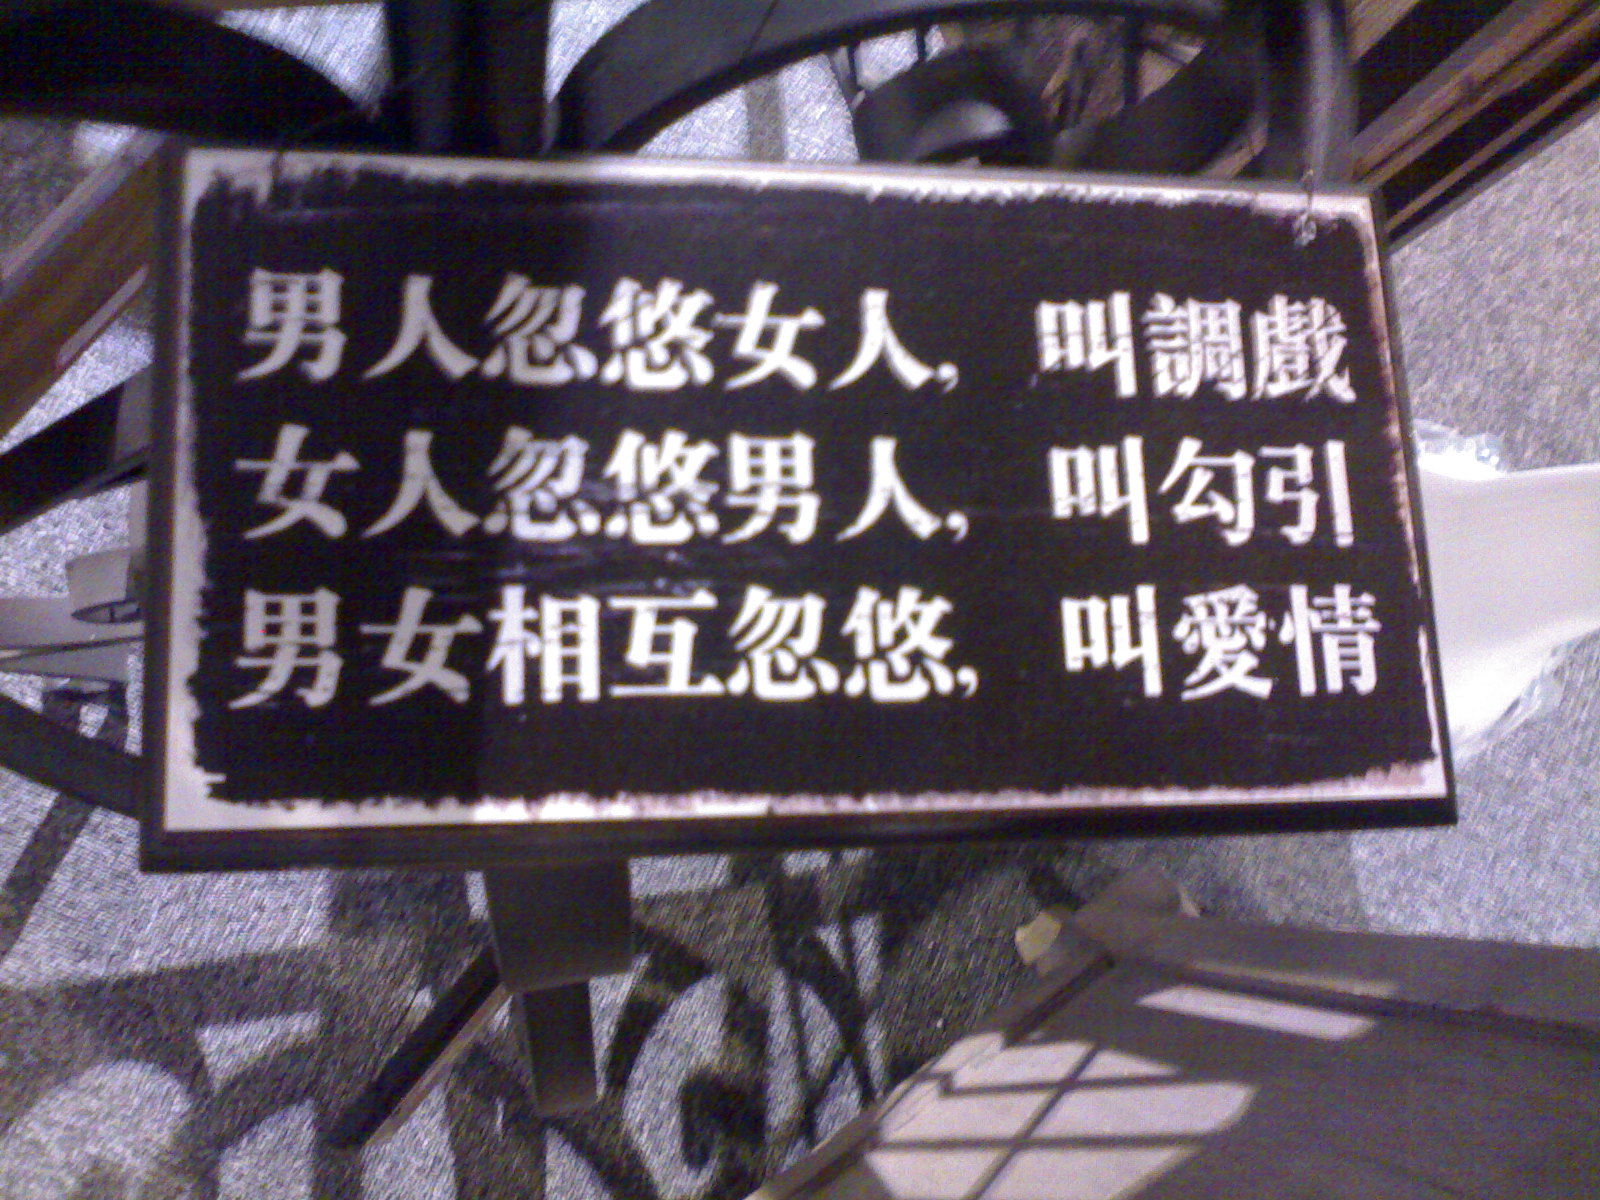 上几张朋友店里的经典语录-情感沙龙-杭州19楼